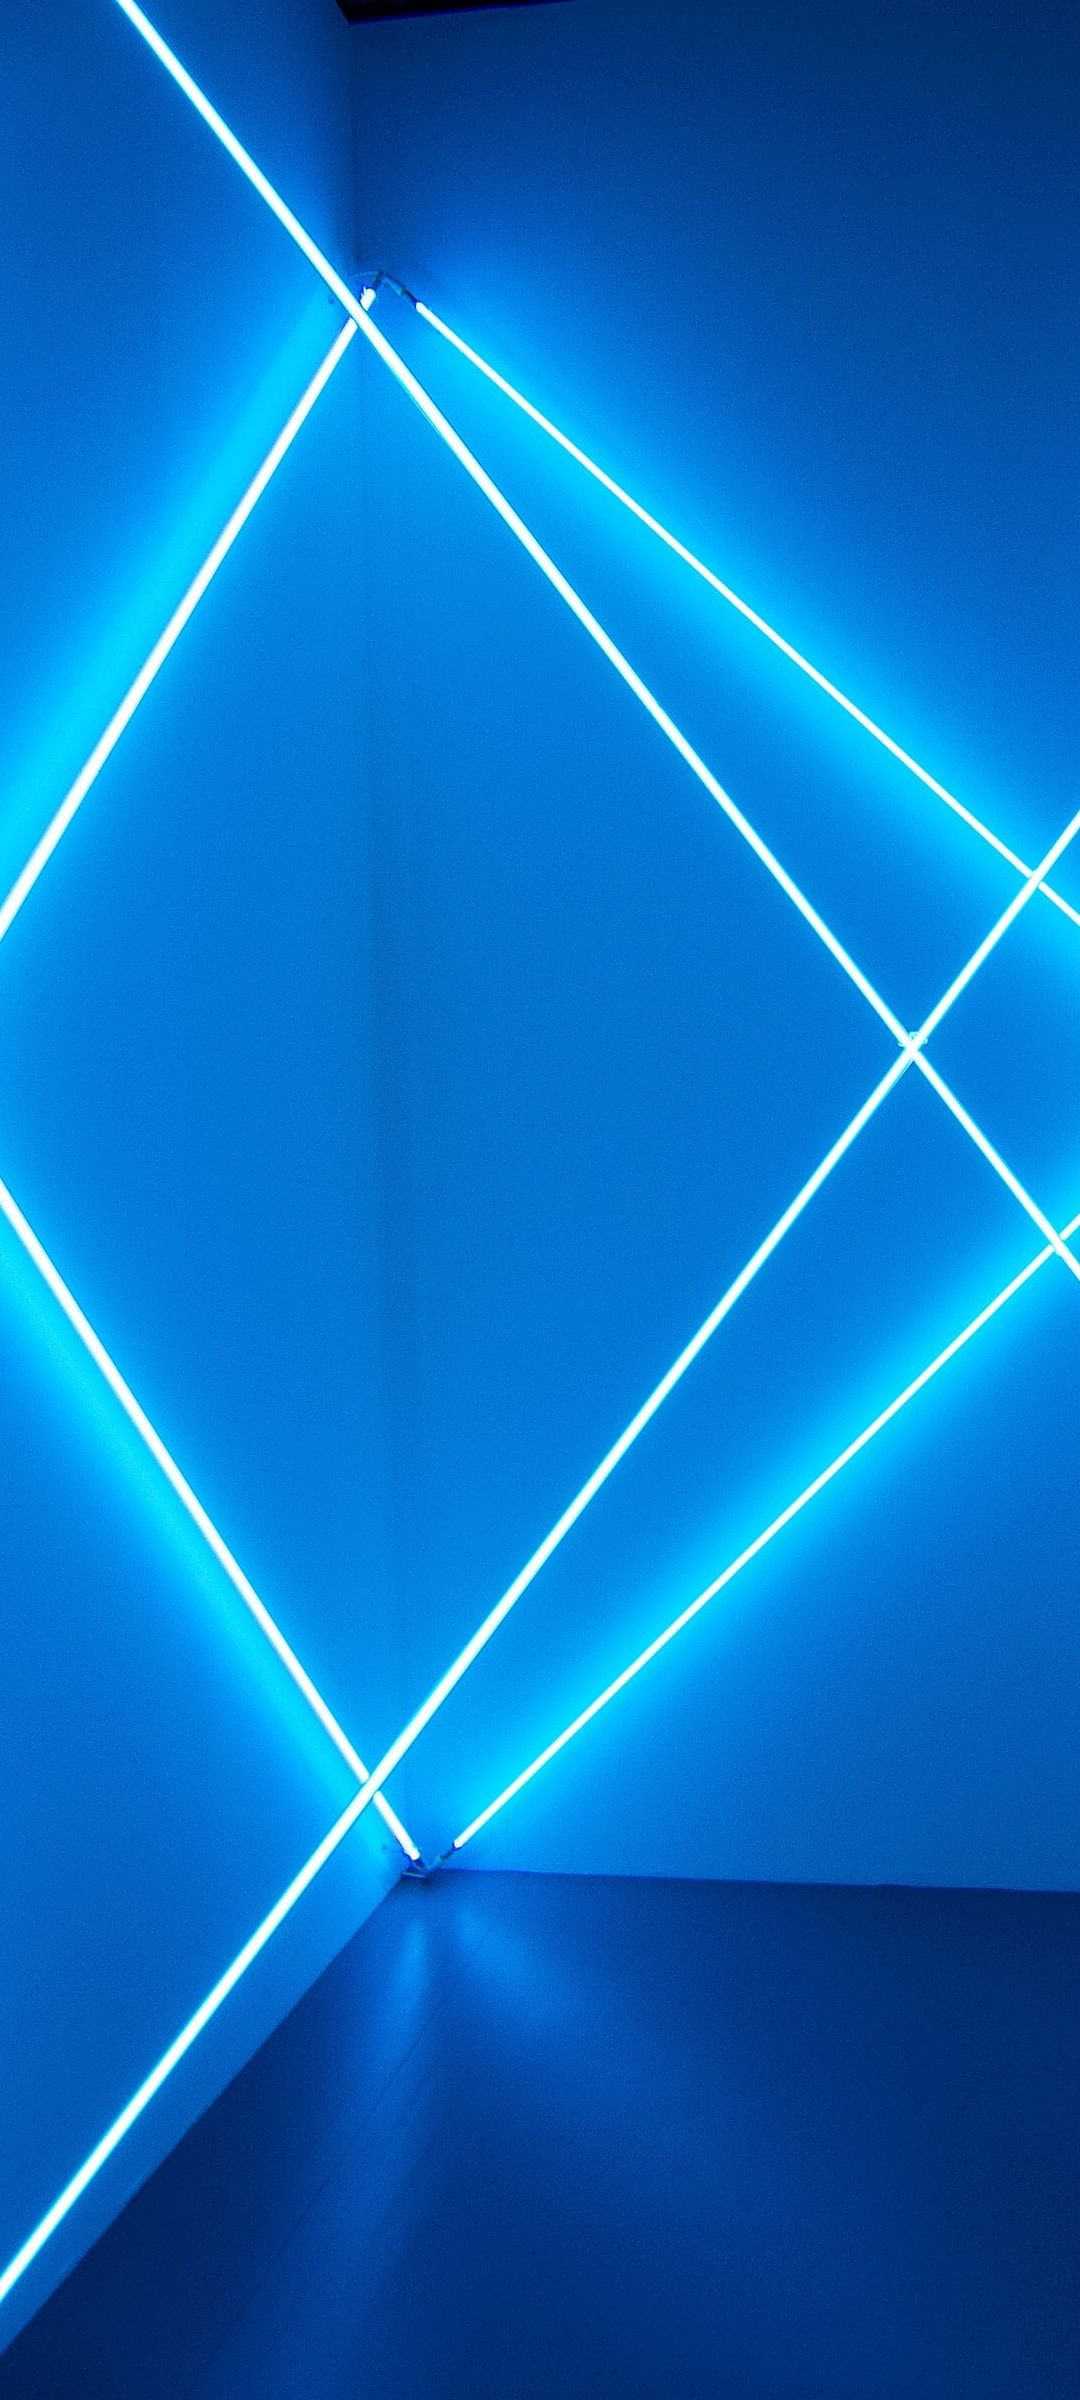 18+] Neon Blue 3D Wallpapers - WallpaperSafari